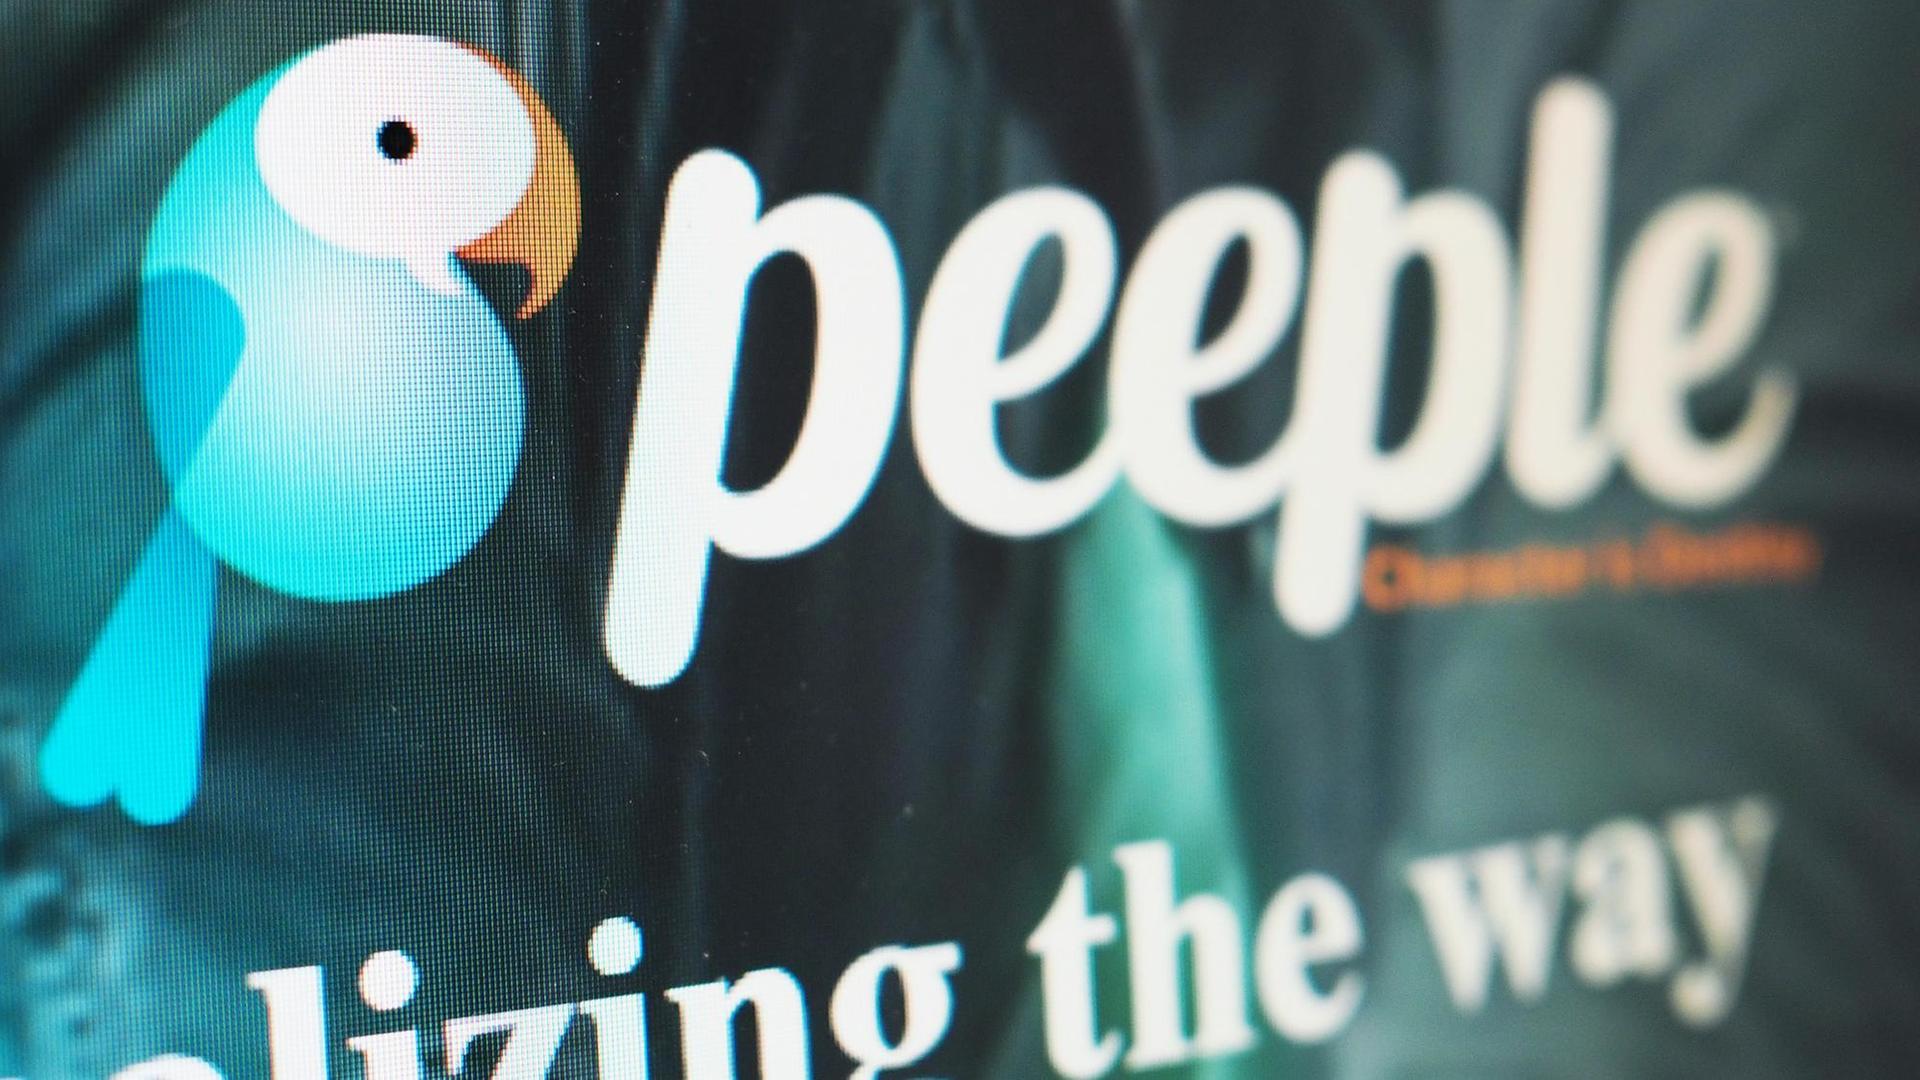 Die umstrittene App Peeple, auf der sich Menschen gegenseitig bewerten können, ist trotz enormer Kritik im Vorfeld in Nordamerika an den Start gegangen. Zu sehen sind Logo und Schriftzug des Unternehmens.